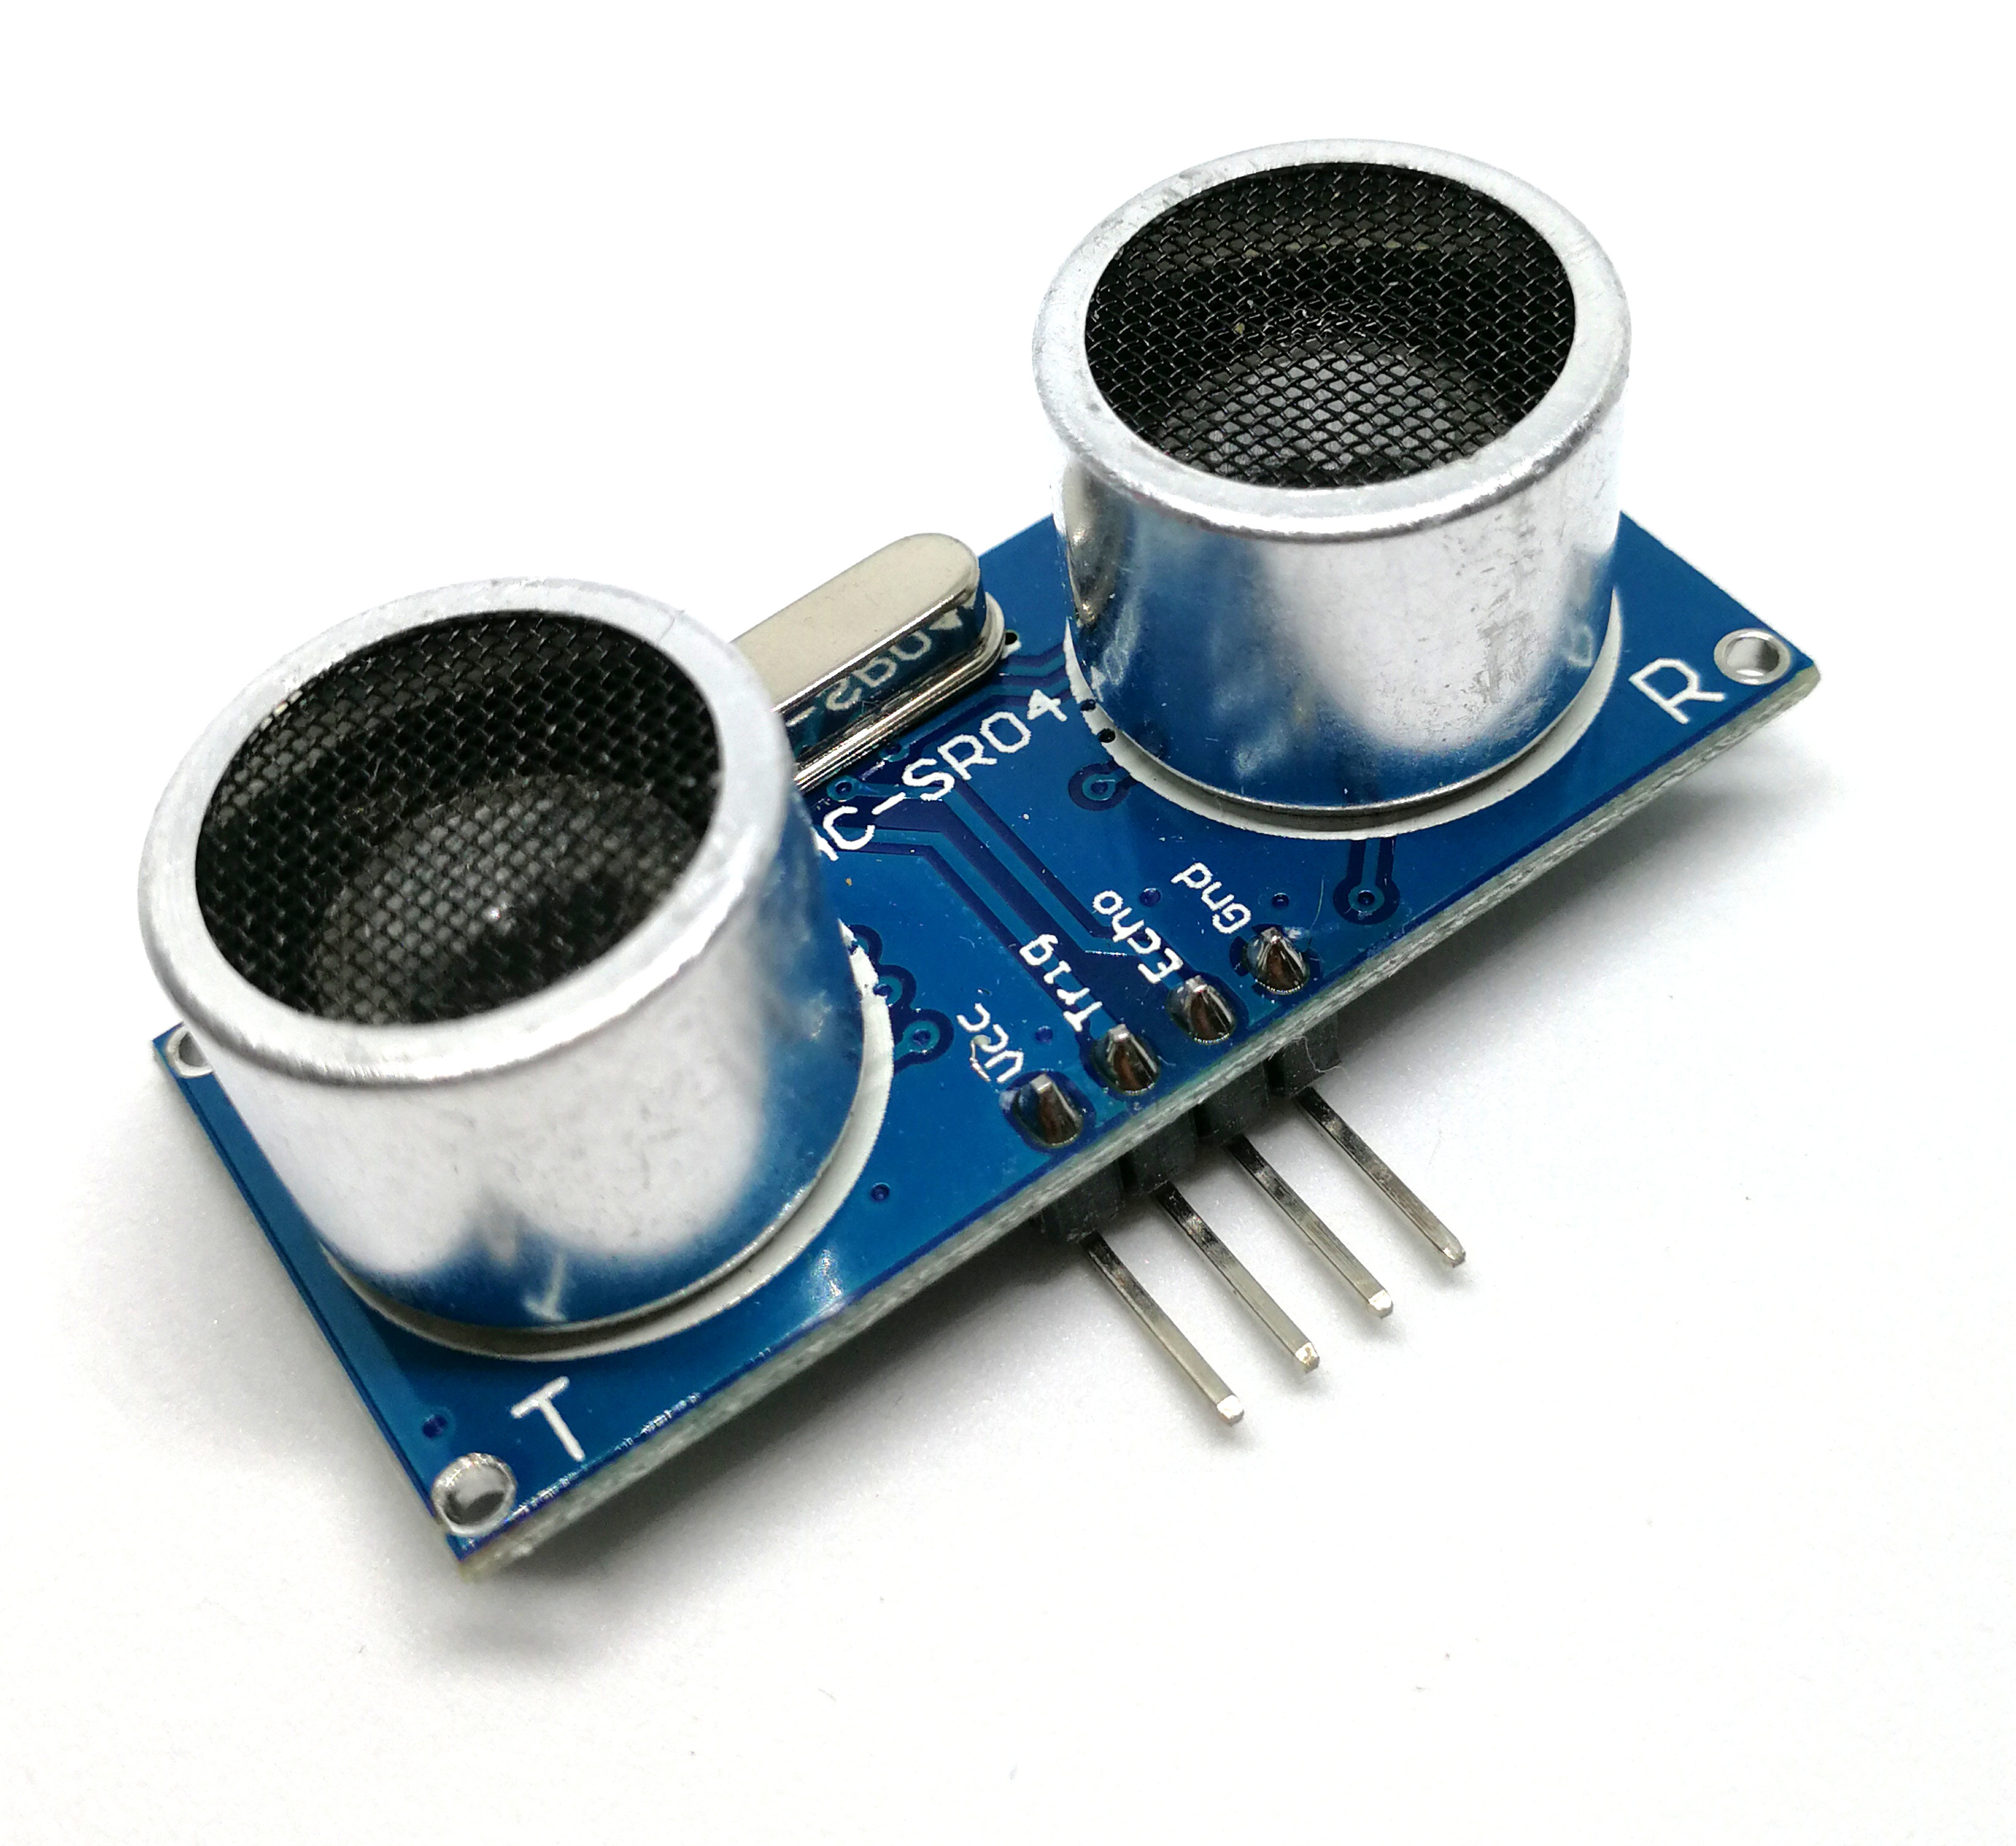 เซนเซอร์  HC-SR04 Ultrasonic Sensor Distance Measuring Module โมดูลวัดระยะทาง Ultrasonic Module Distance Measuring Transducer Sensor